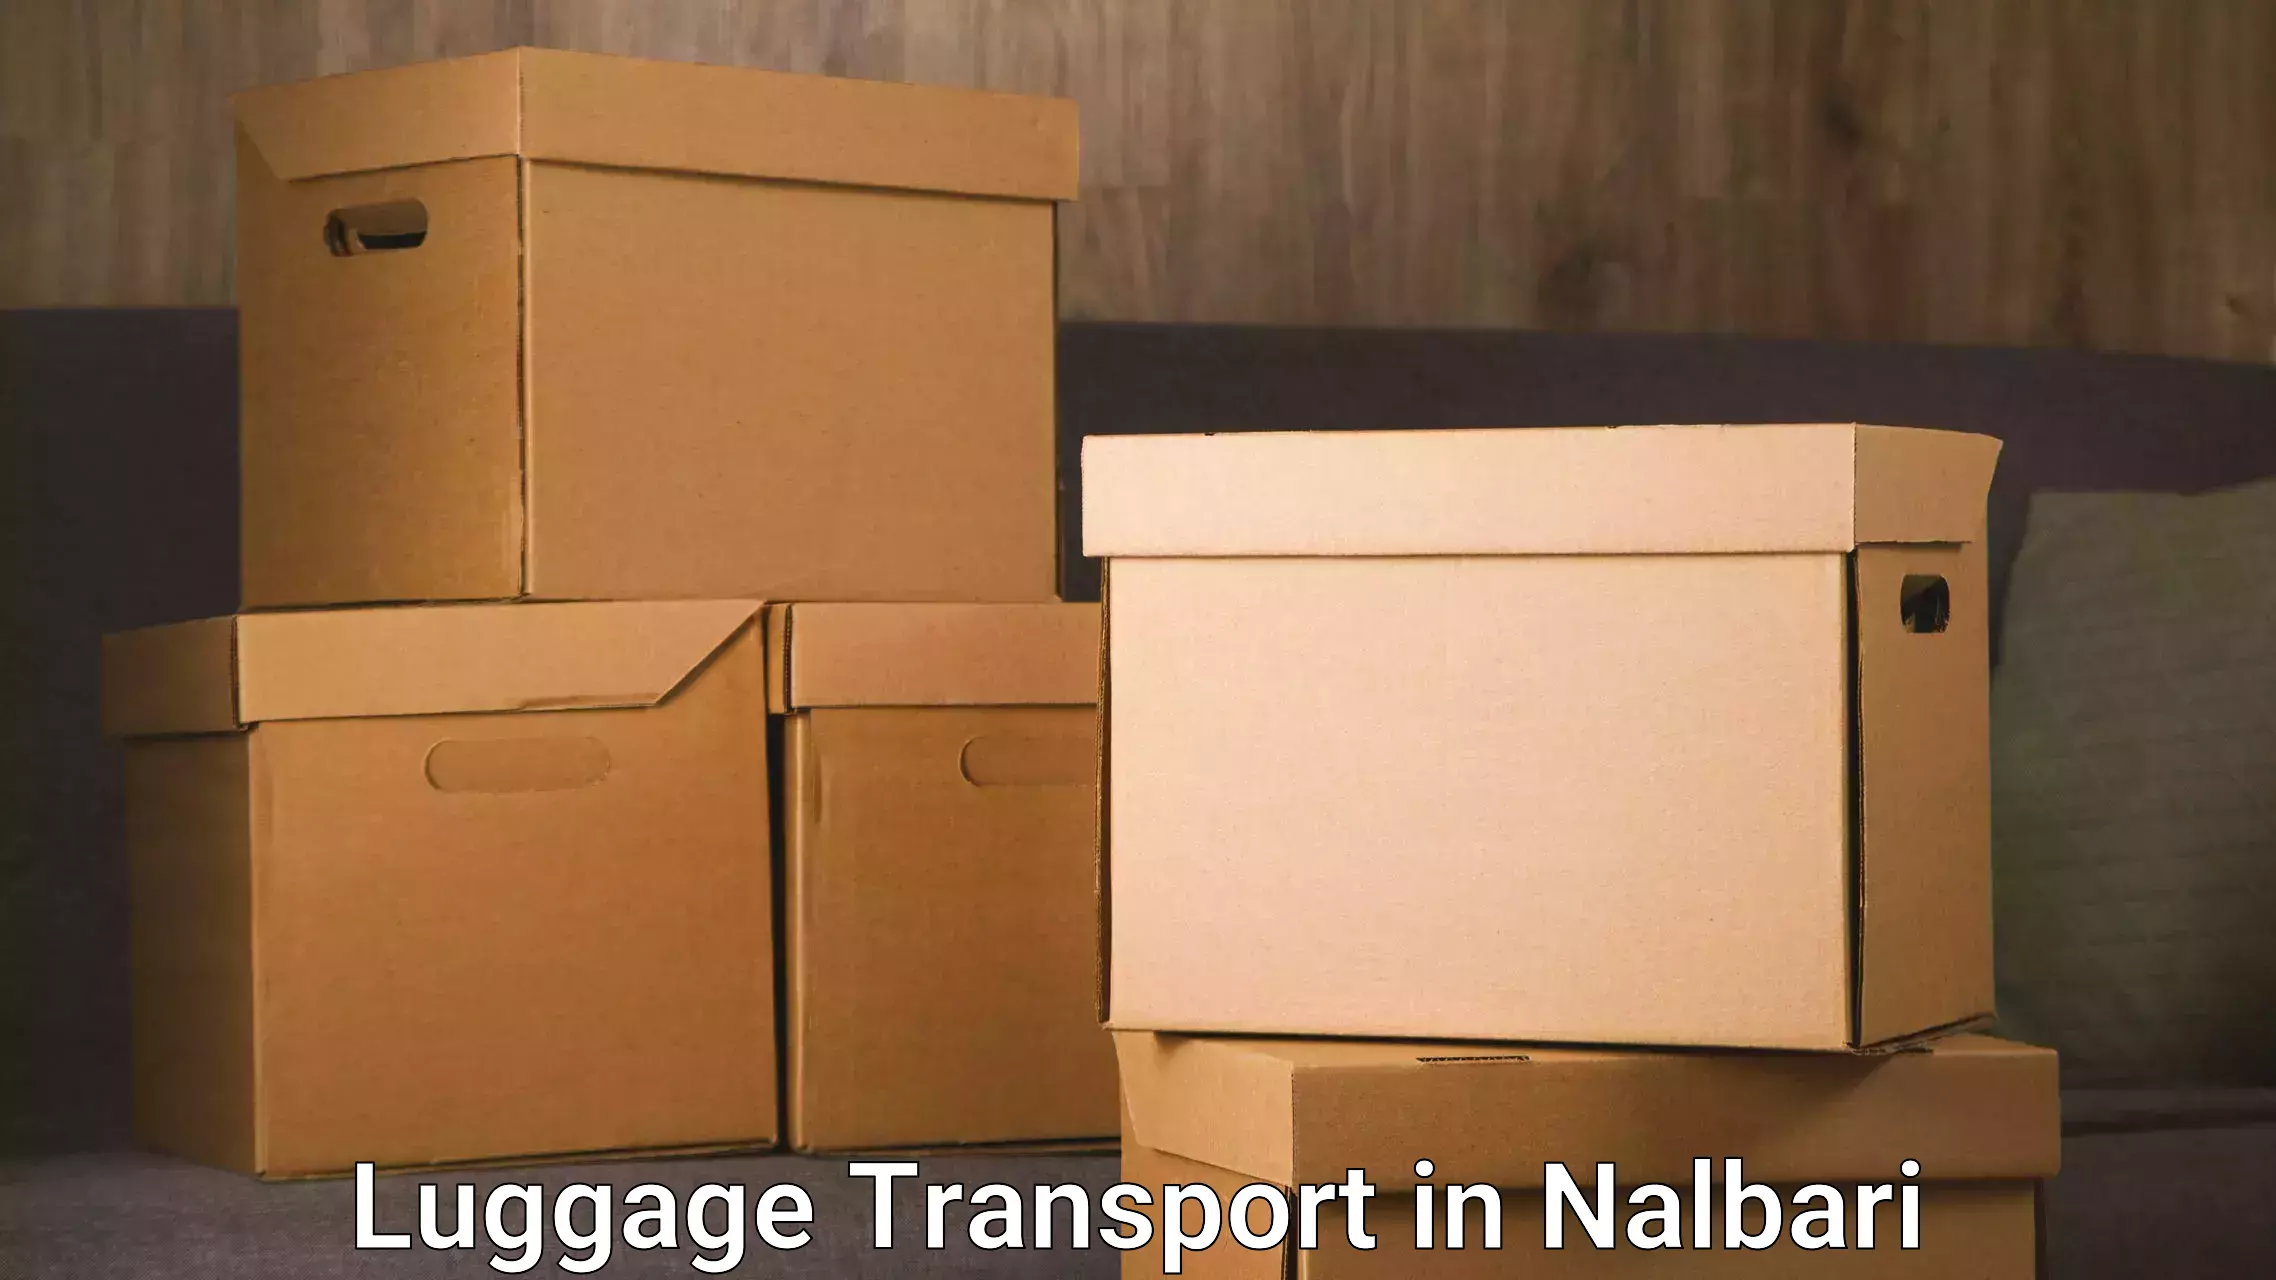 Luggage transit service in Nalbari